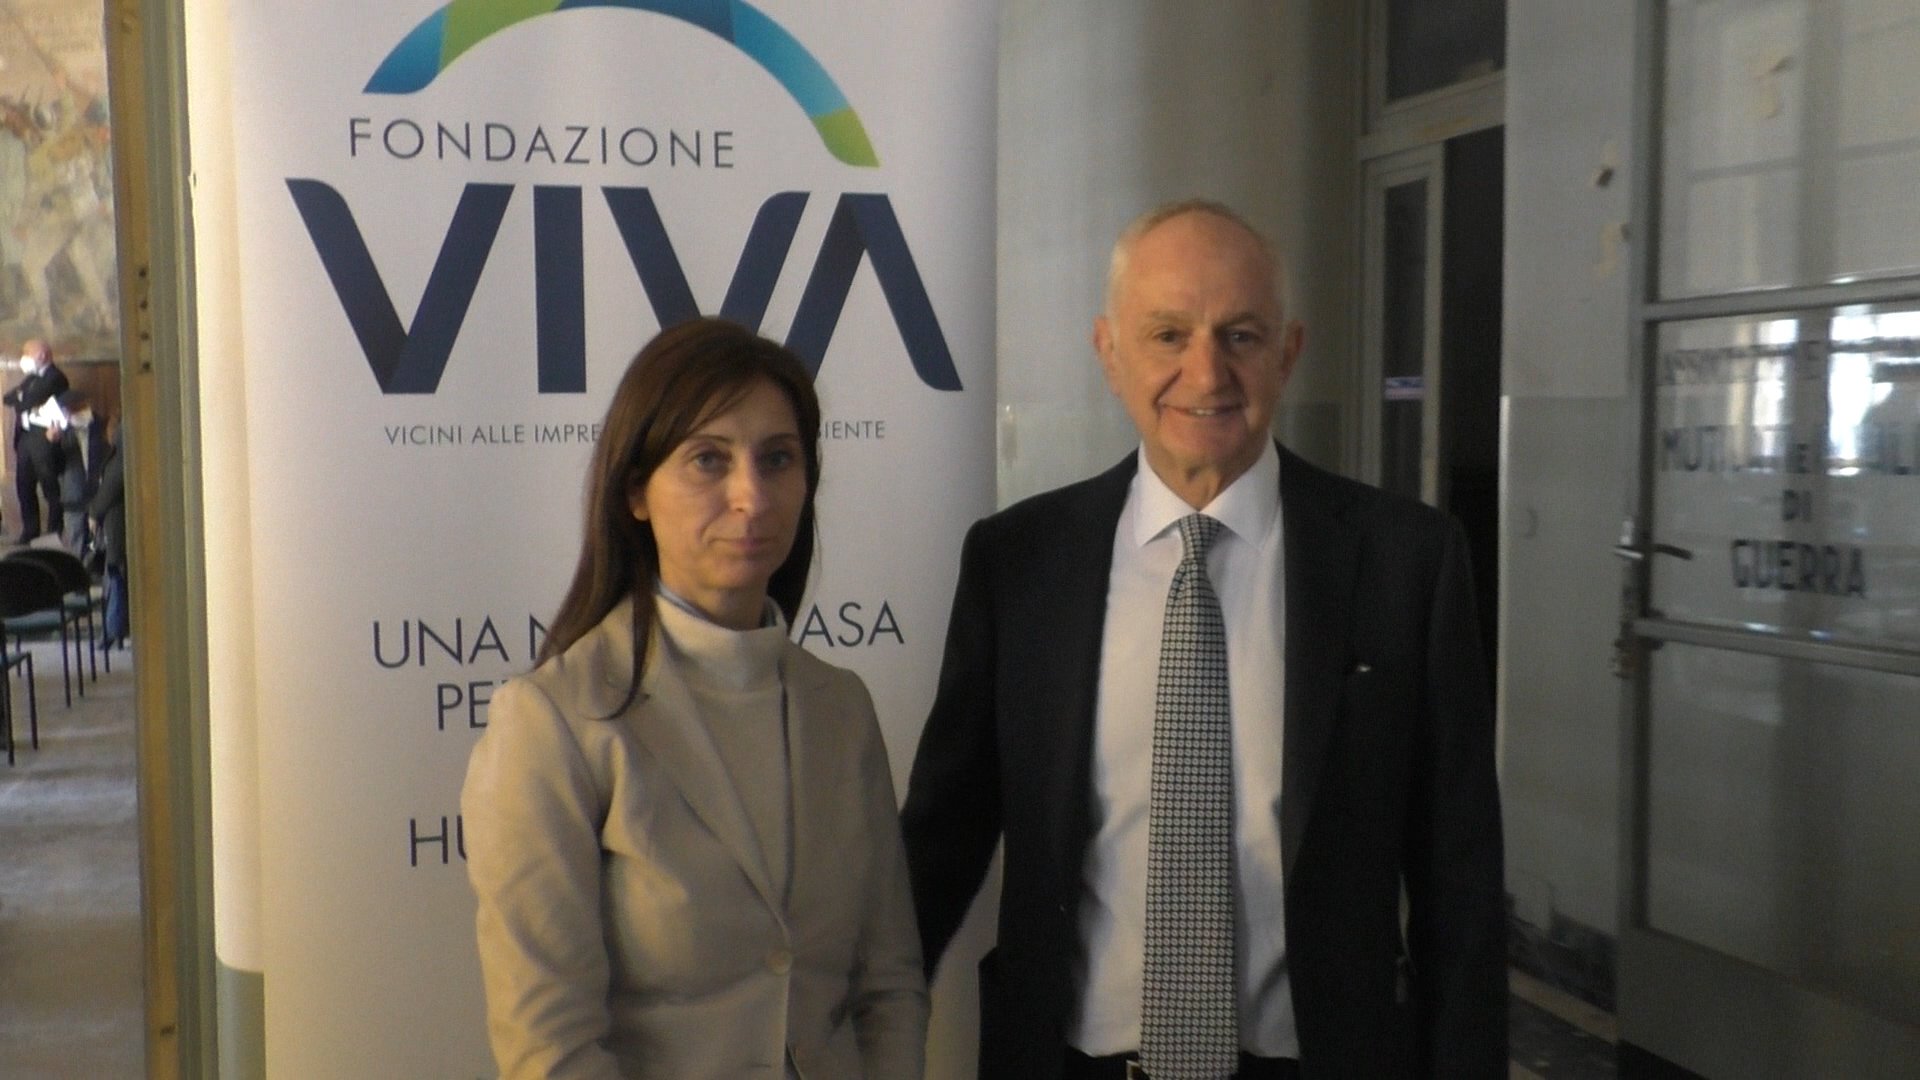 Confindustria Alessandria, la Fondazione Viva è realtà: “Vicini alle imprese, vicini all’ambiente”